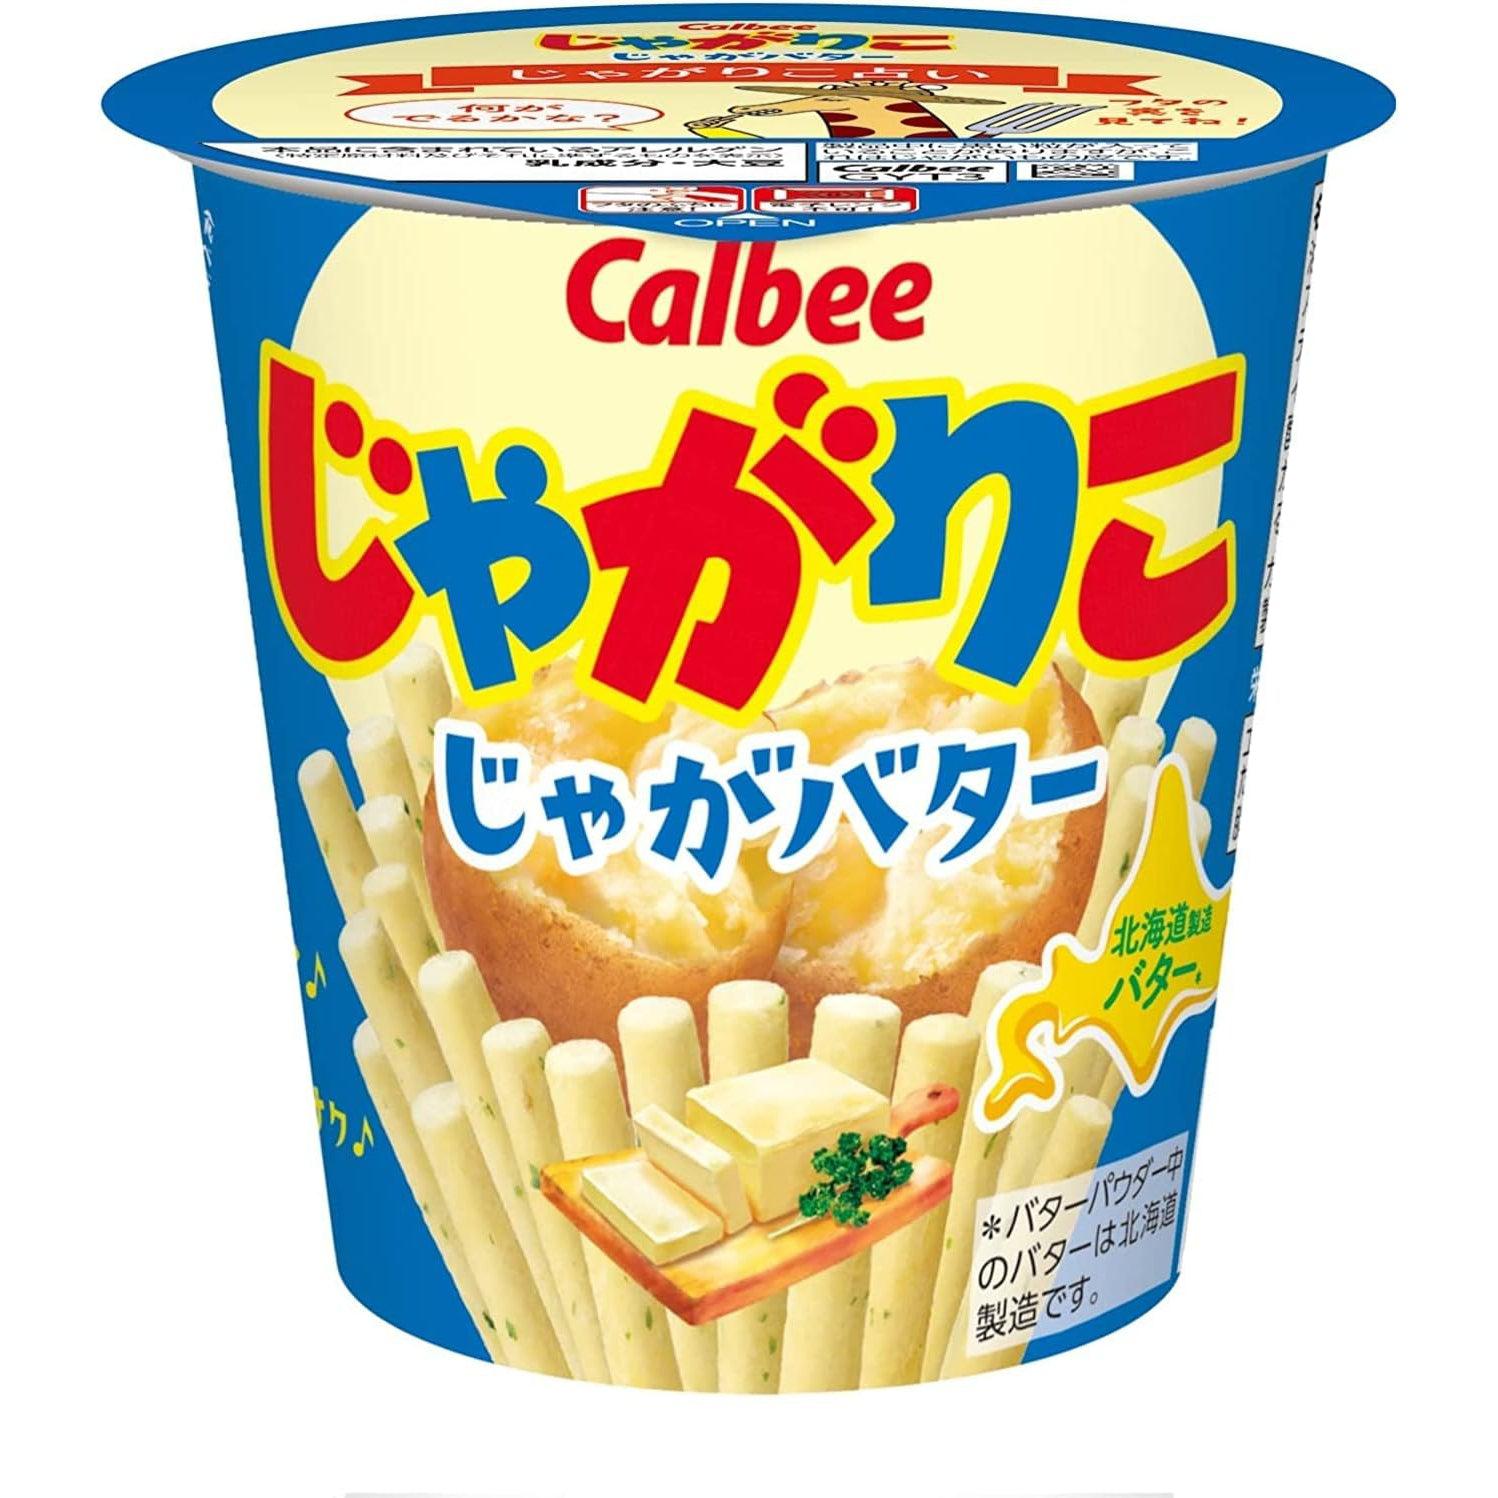 Calbee Jagarico Hokkaido Butter Potato Sticks (Pack of 6)